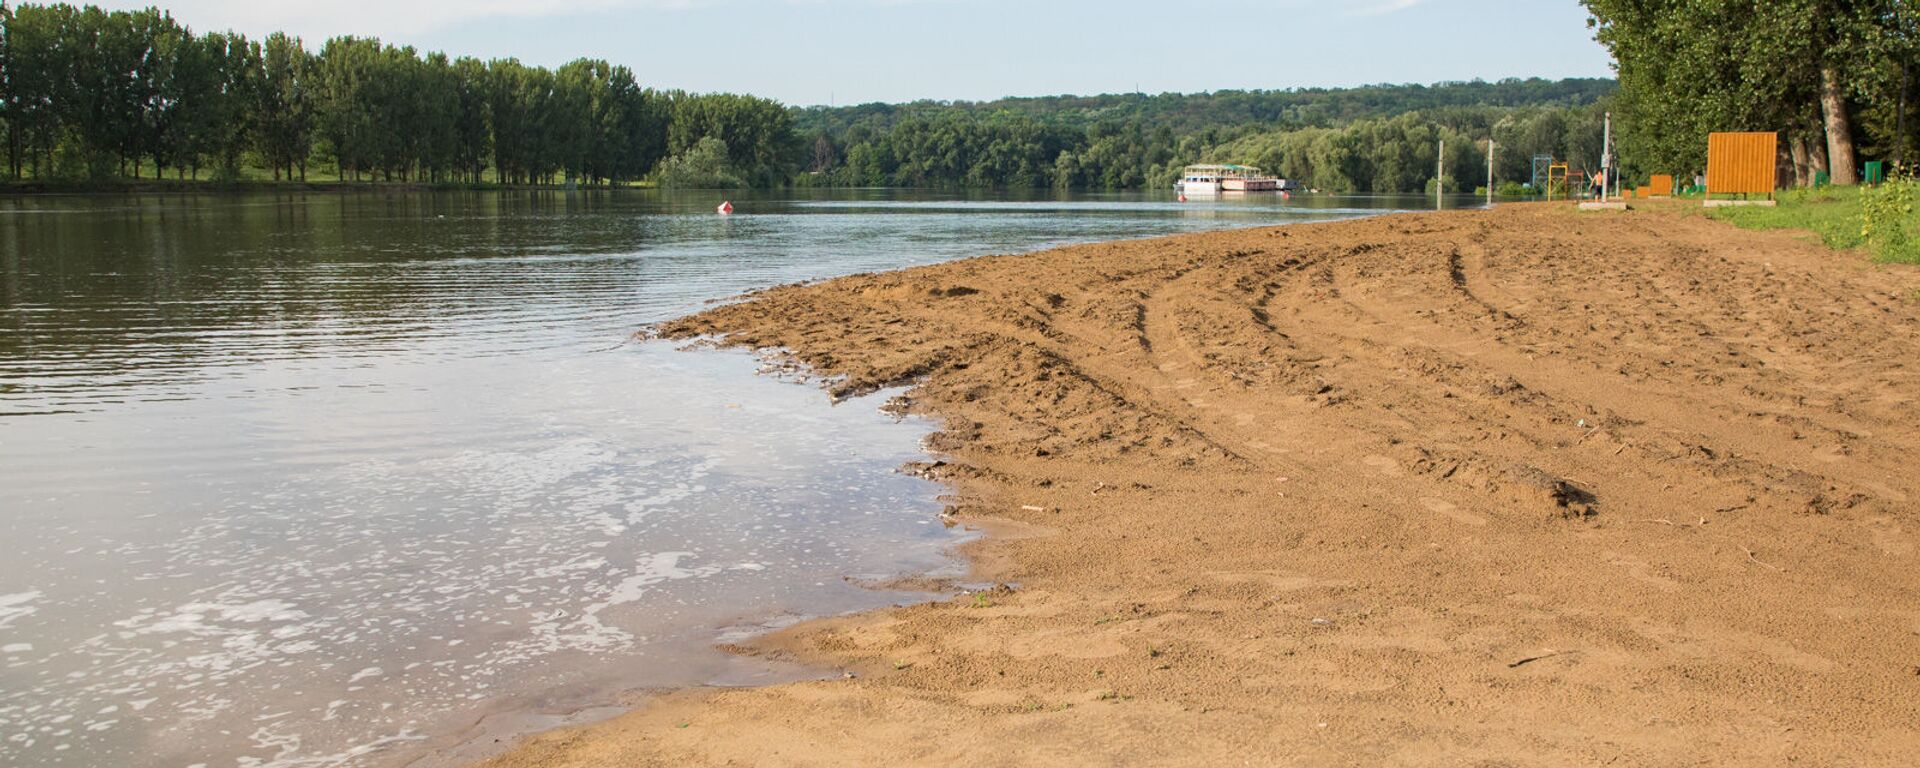 Pericol de inundații provocat de creșterea nivelului de apă în râul Nistru în urma ploilor abundente - Sputnik Moldova, 1920, 07.08.2020